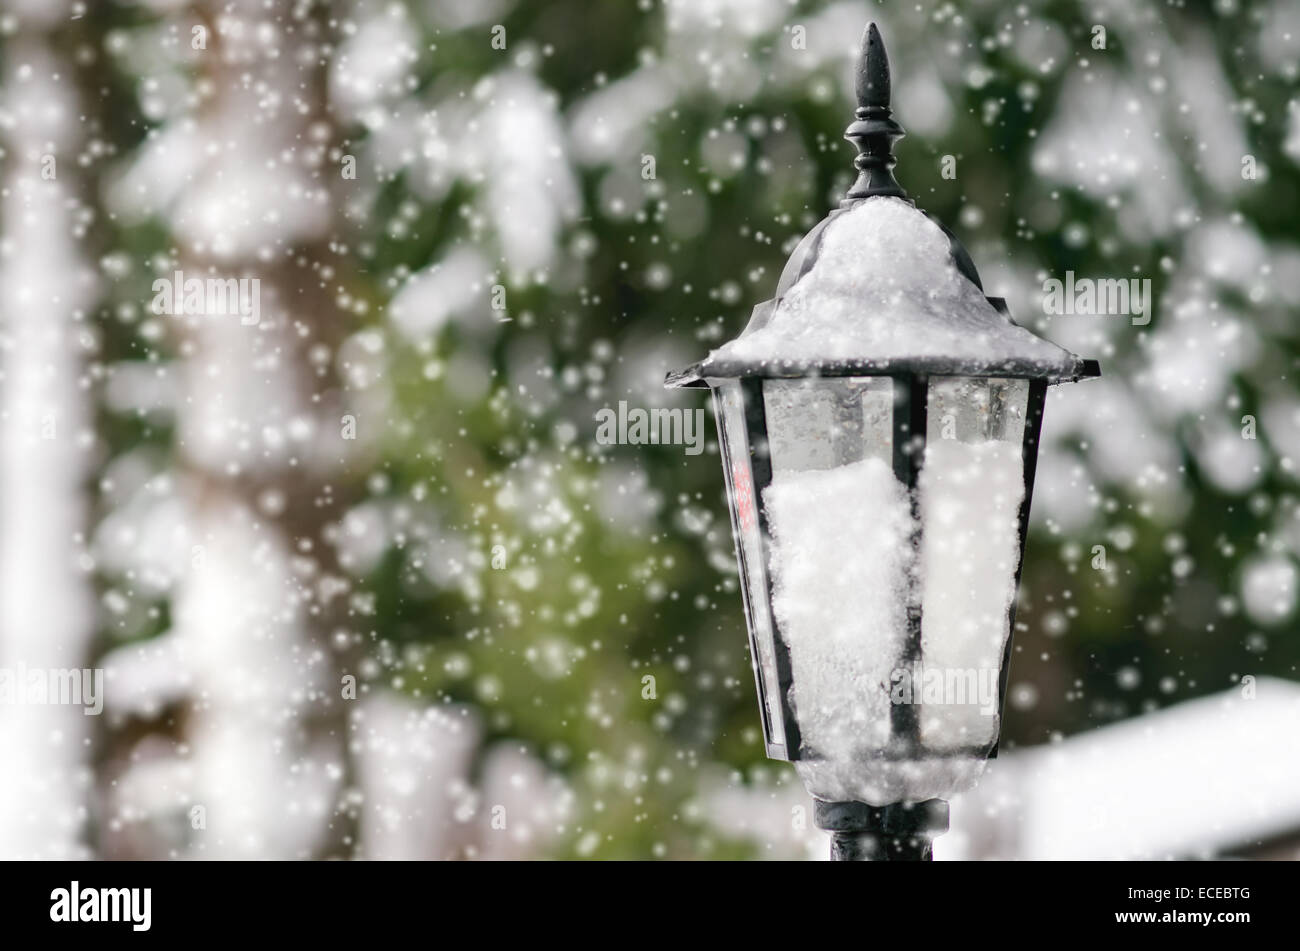 La Bulgarie, la lampe rue couverte de neige Banque D'Images